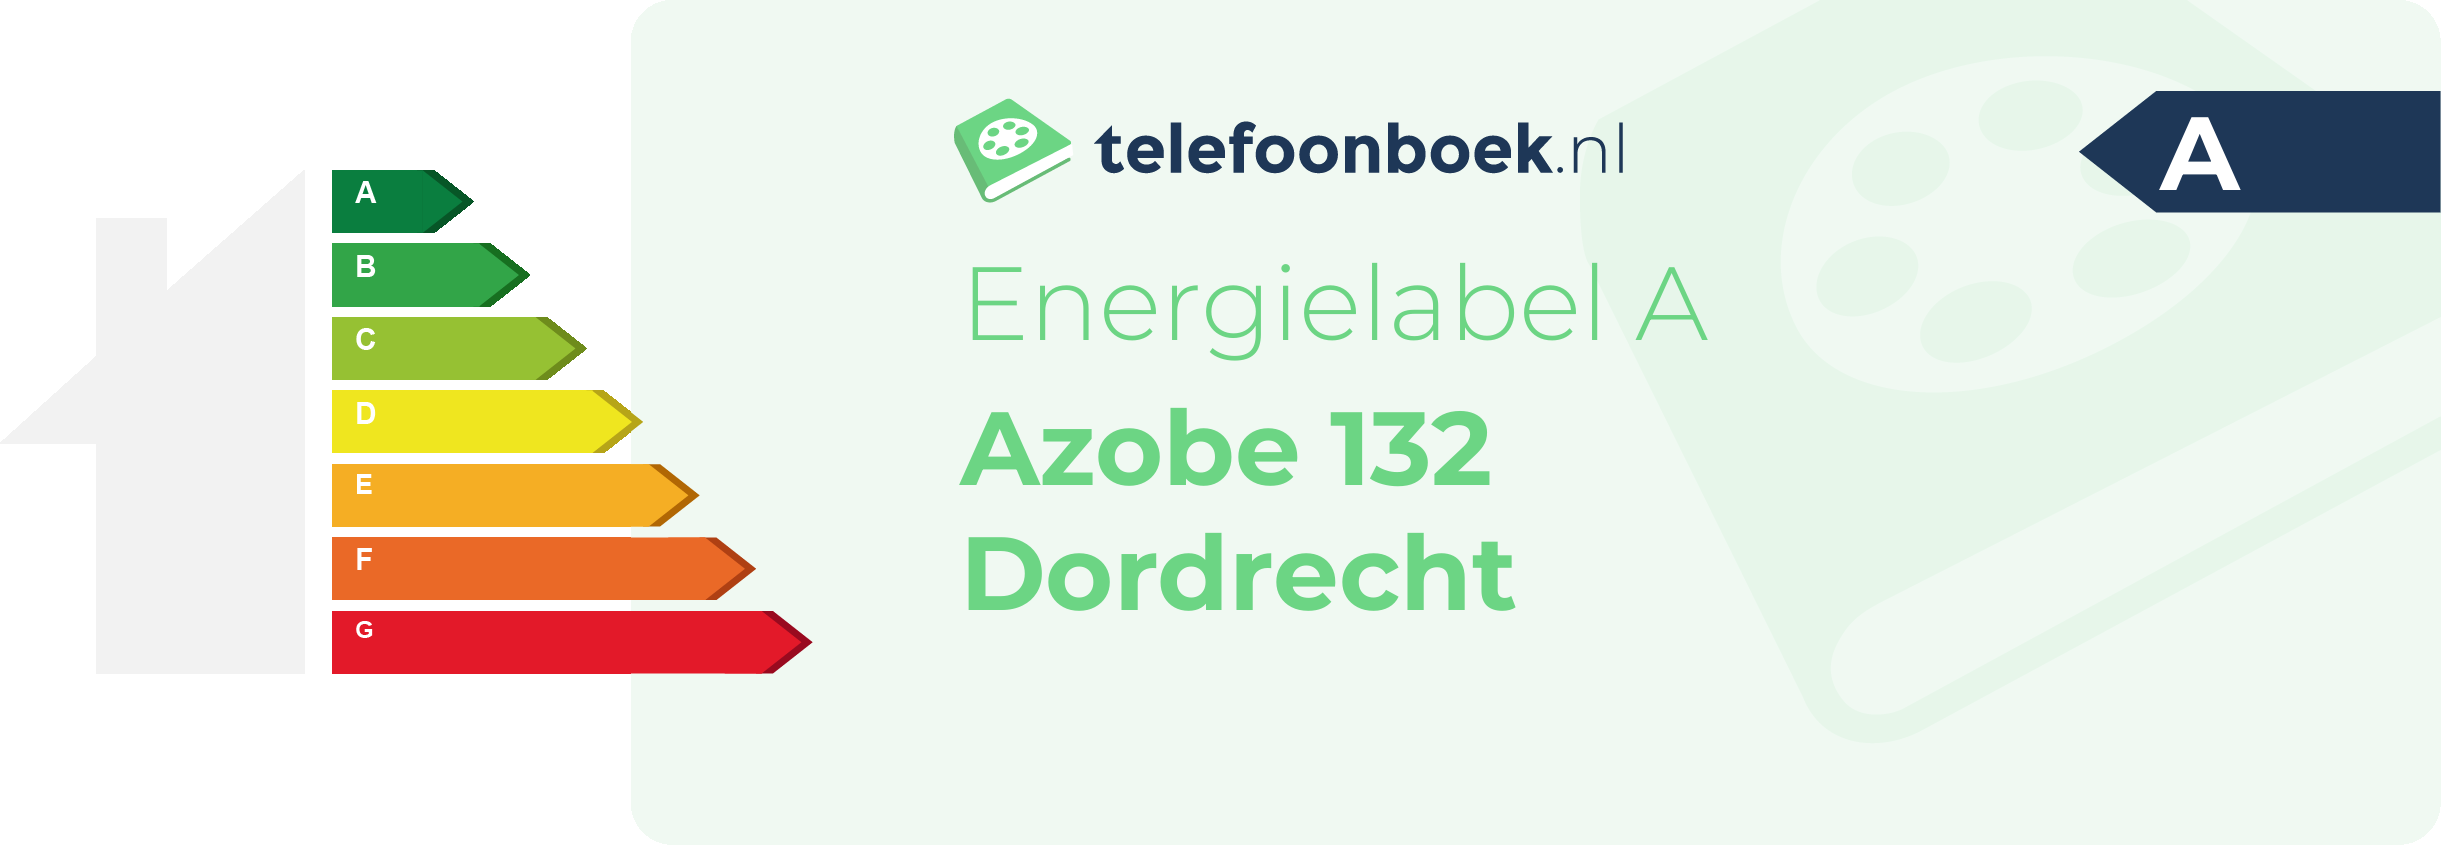 Energielabel Azobe 132 Dordrecht